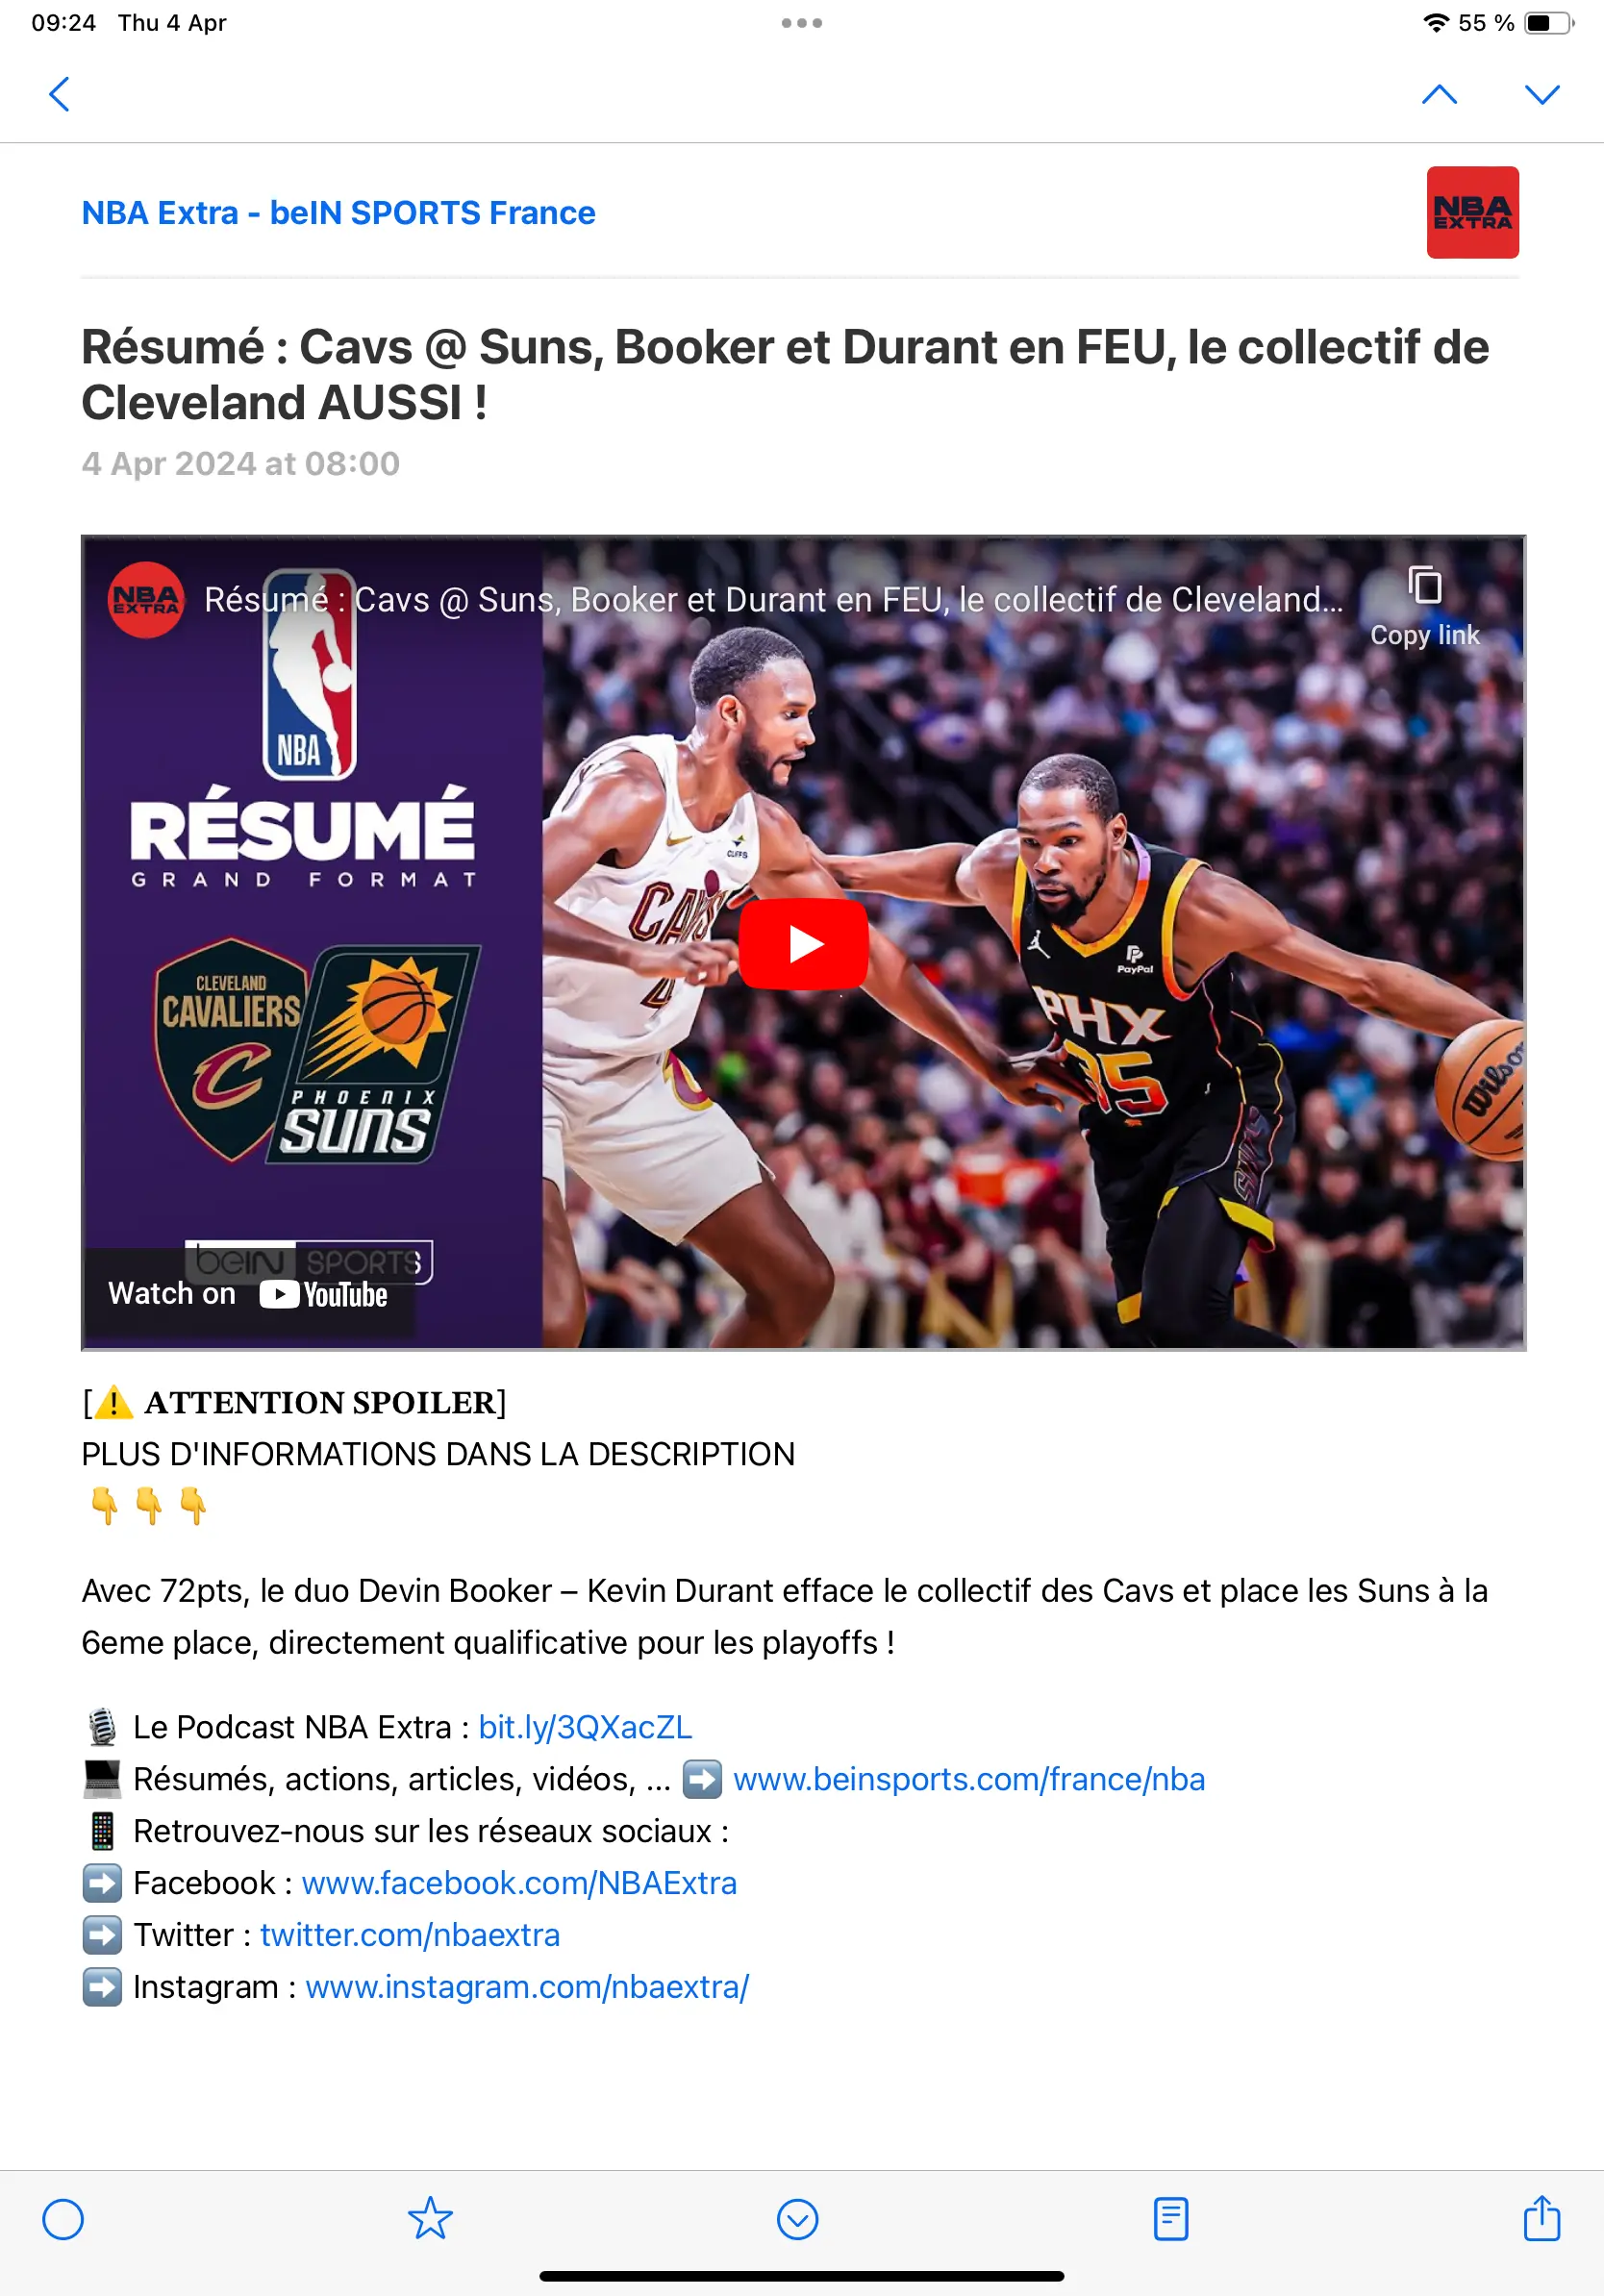 Un résumé de NBA dont la page ne spoile pas le résultat.